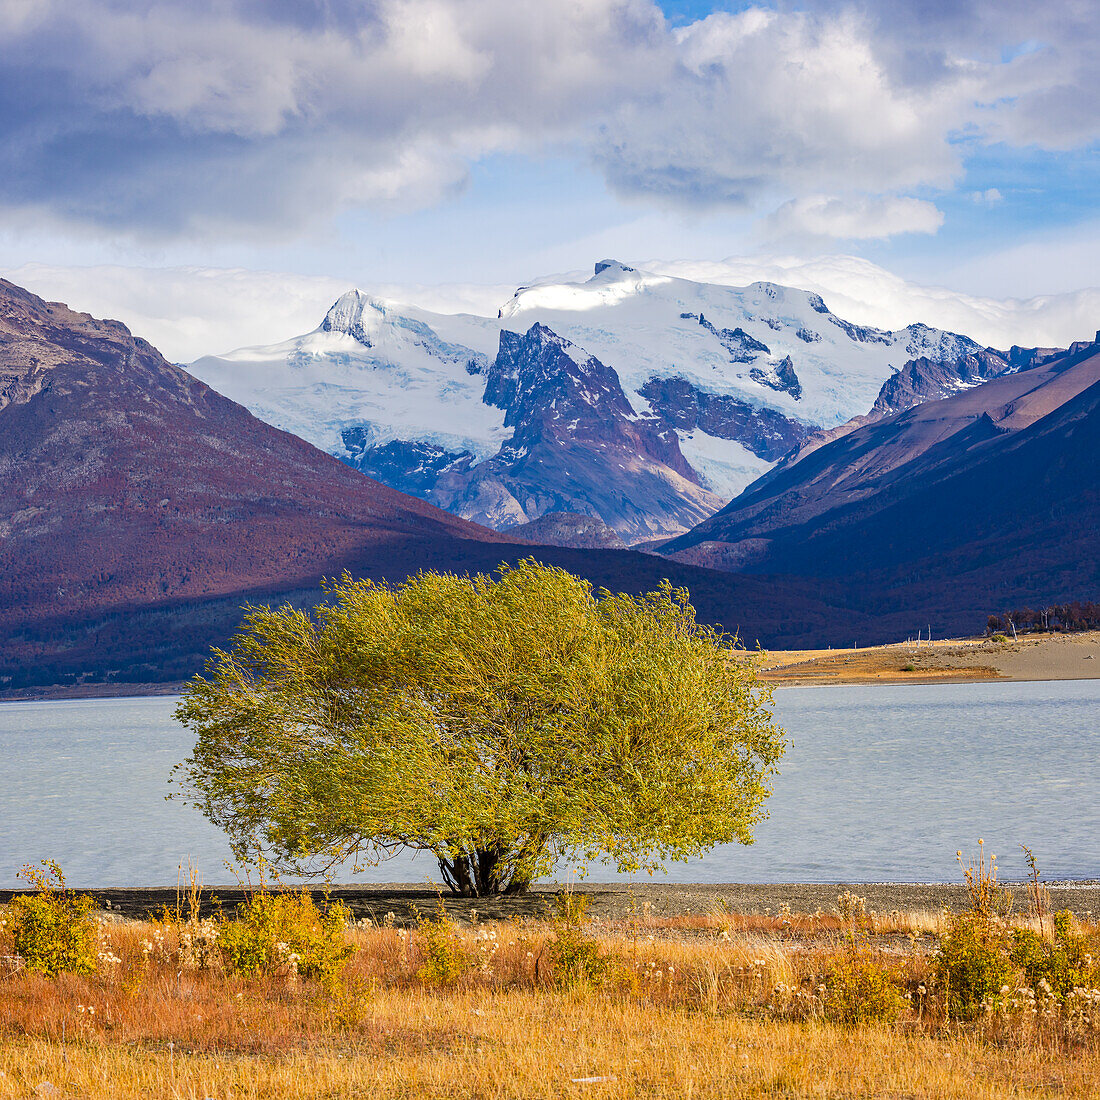 Markanter grüner Baum am Ufer des Lago Argentino vor markanten Schneebergen der Anden, Argentinien, Patagonien, Südamerika